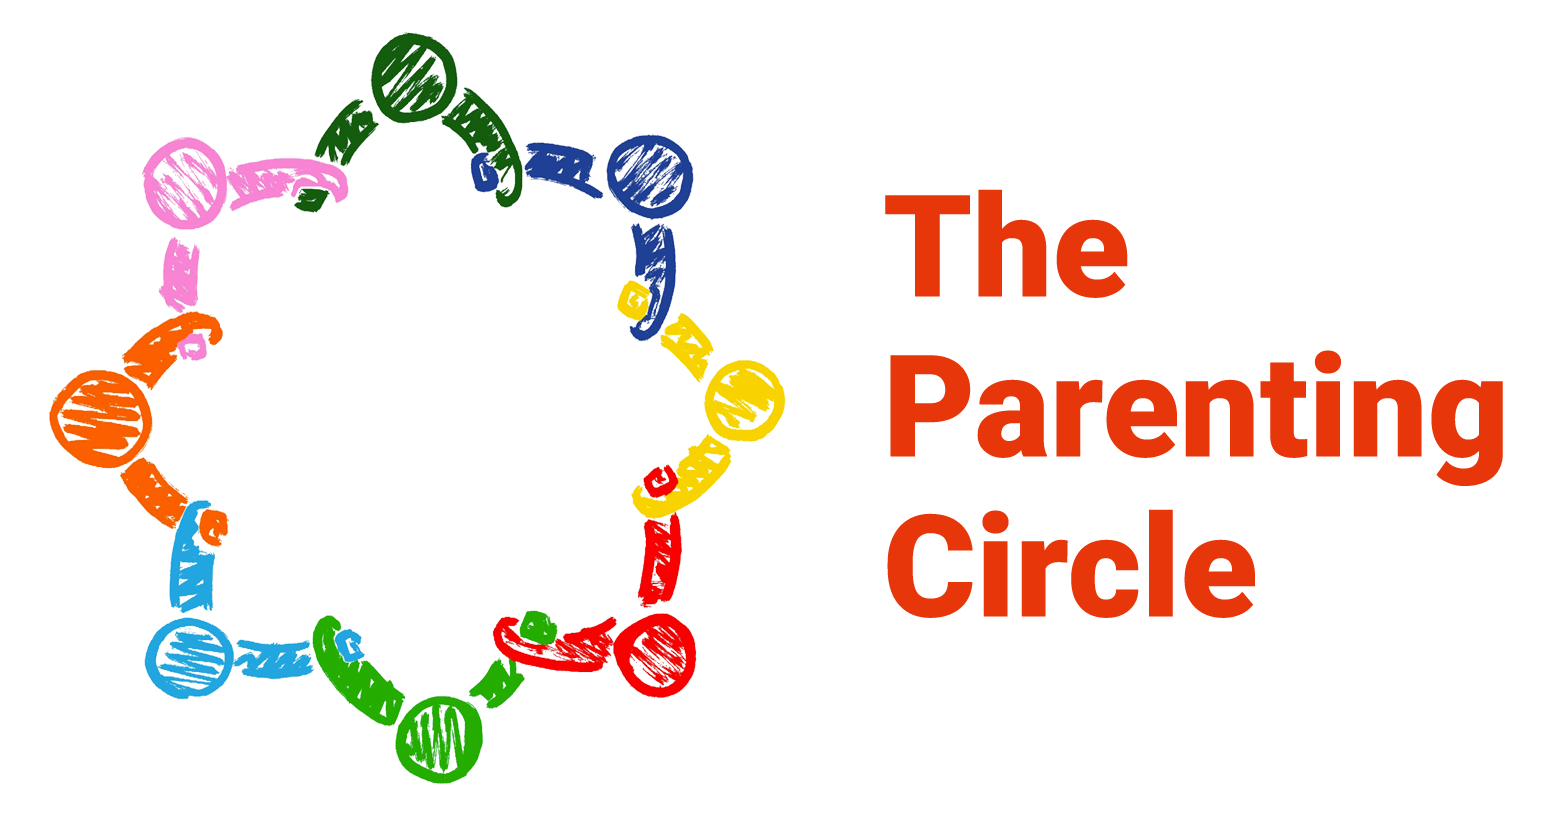 Parenting Circle